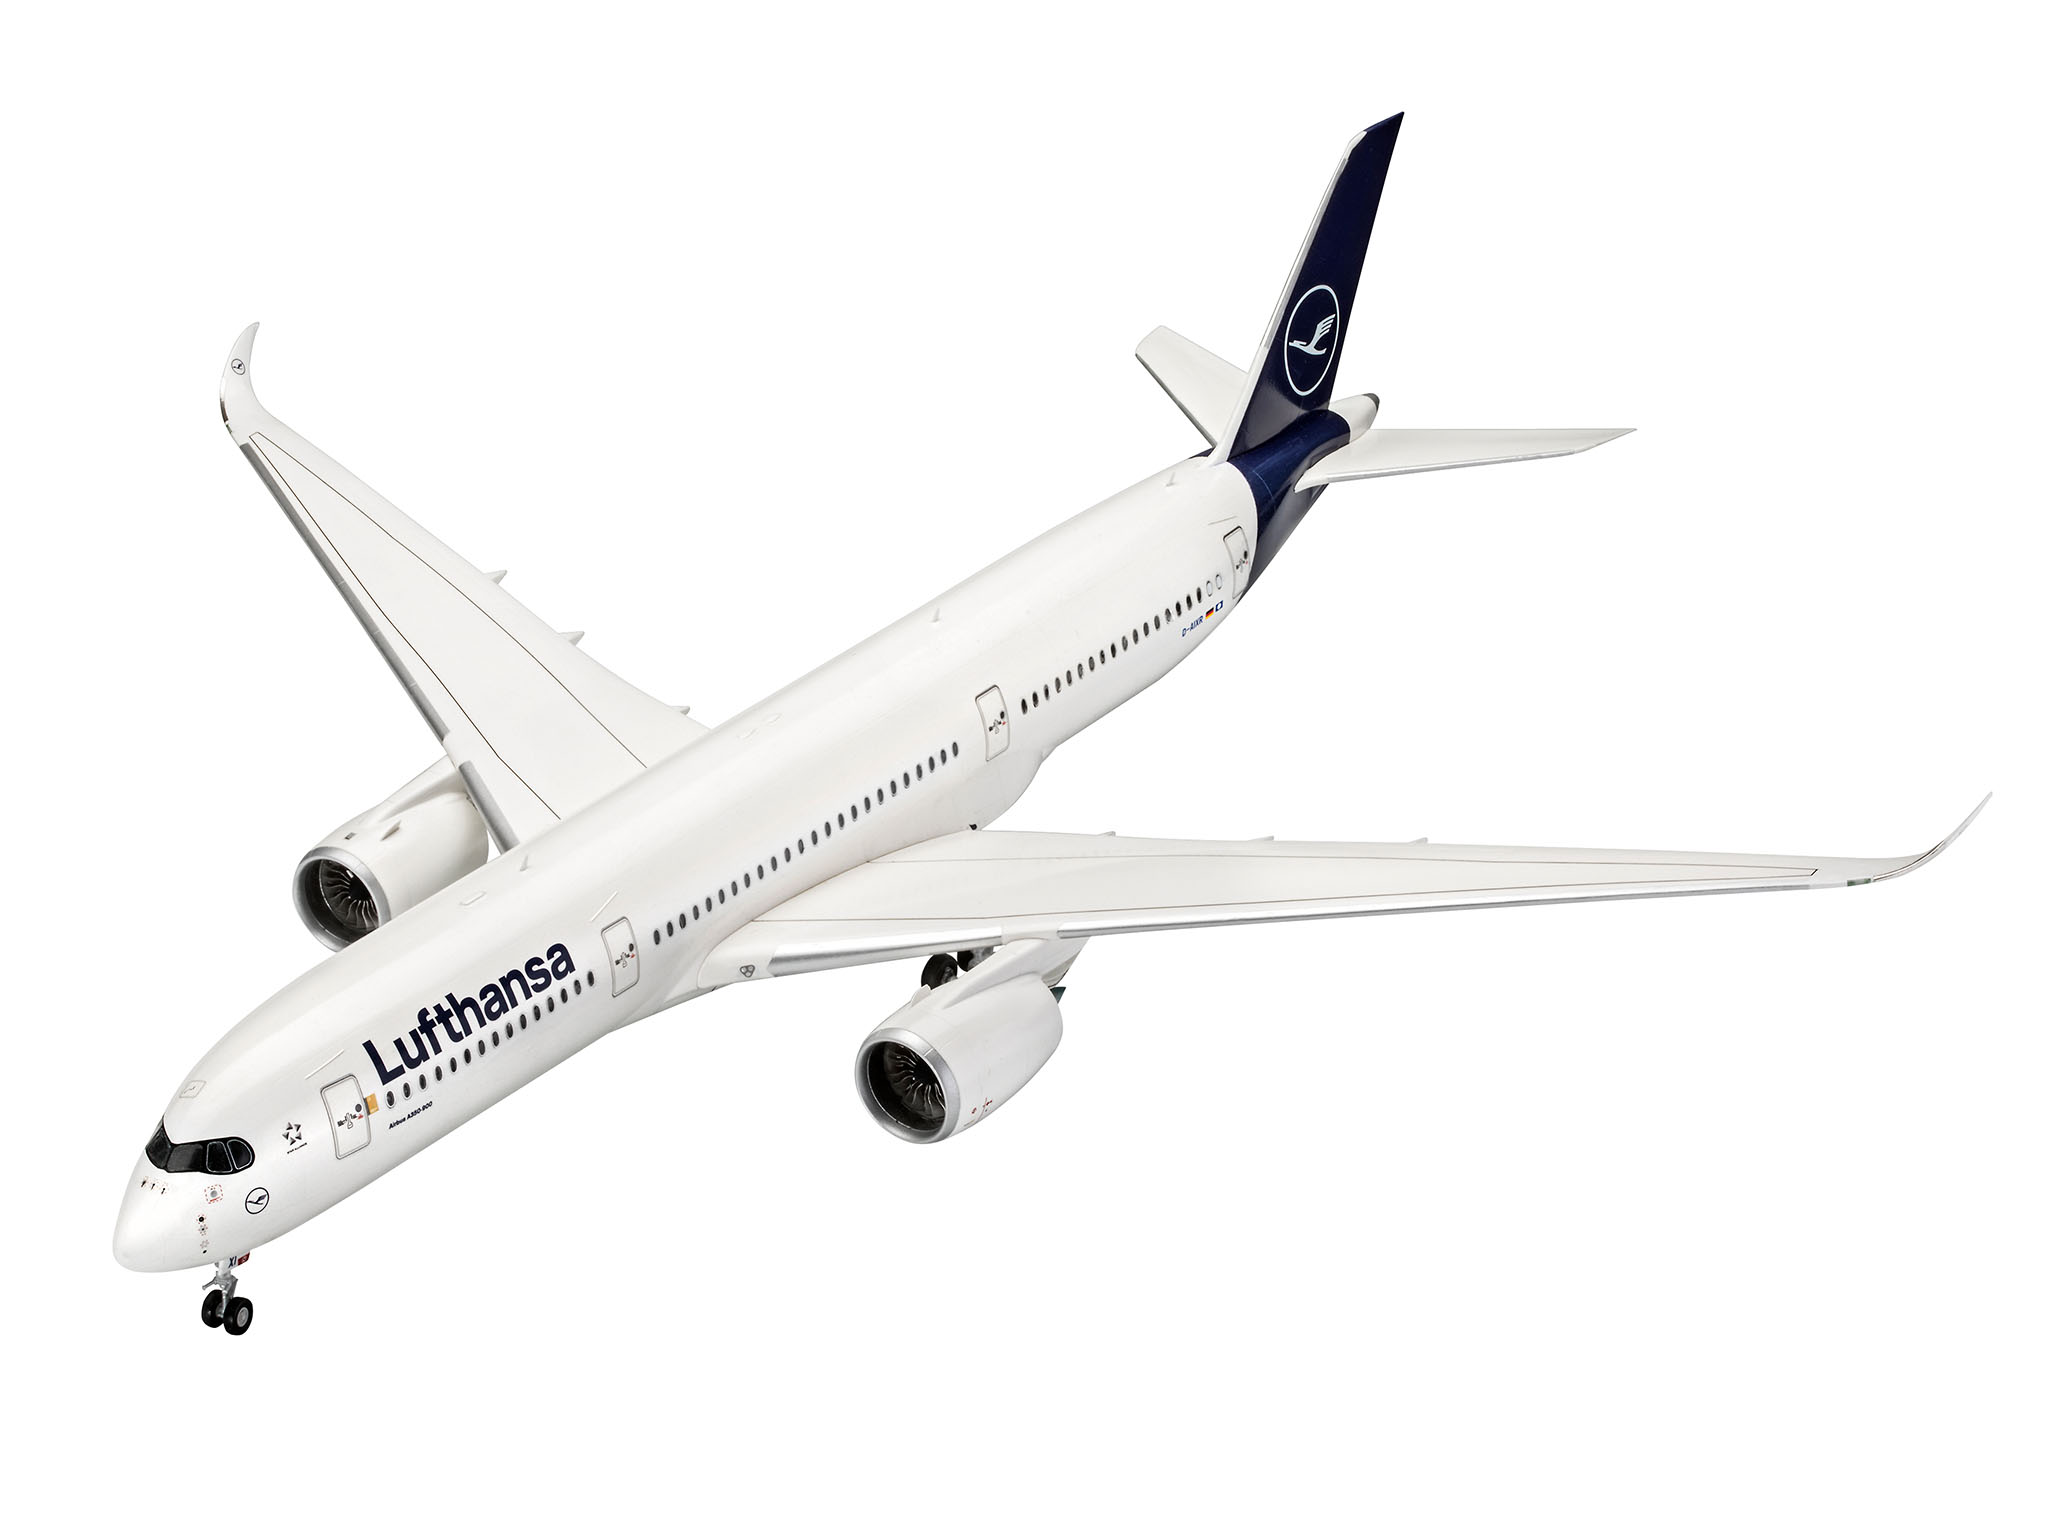 Airbus A350-900 Lufthansa New - 03881